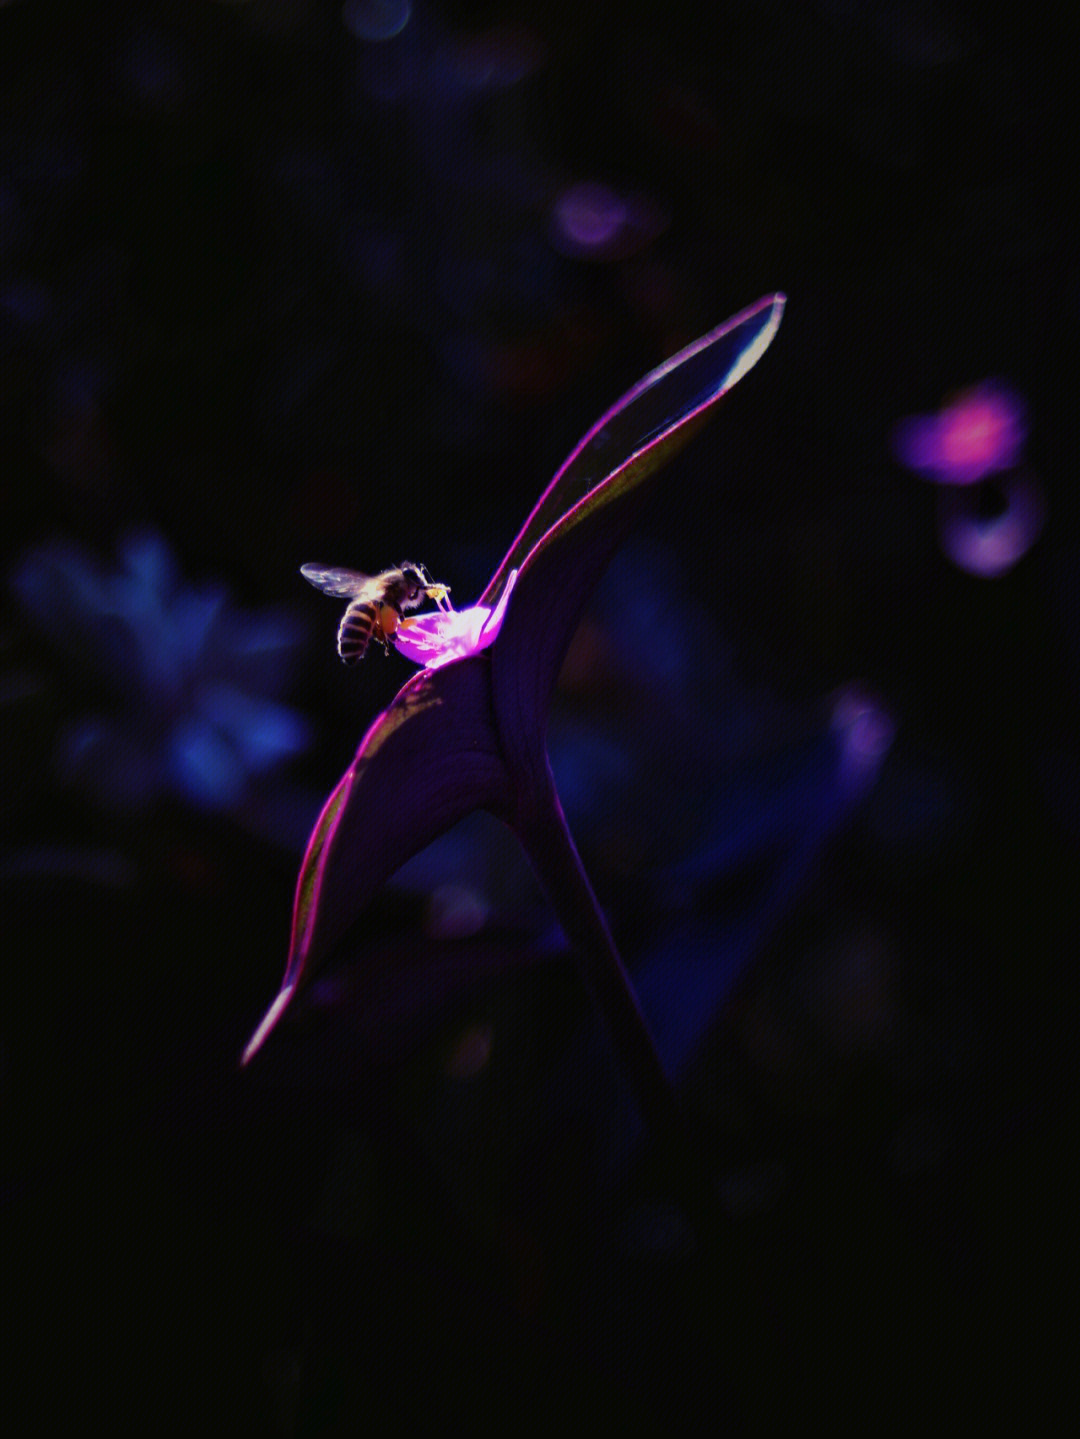 紫竹梅